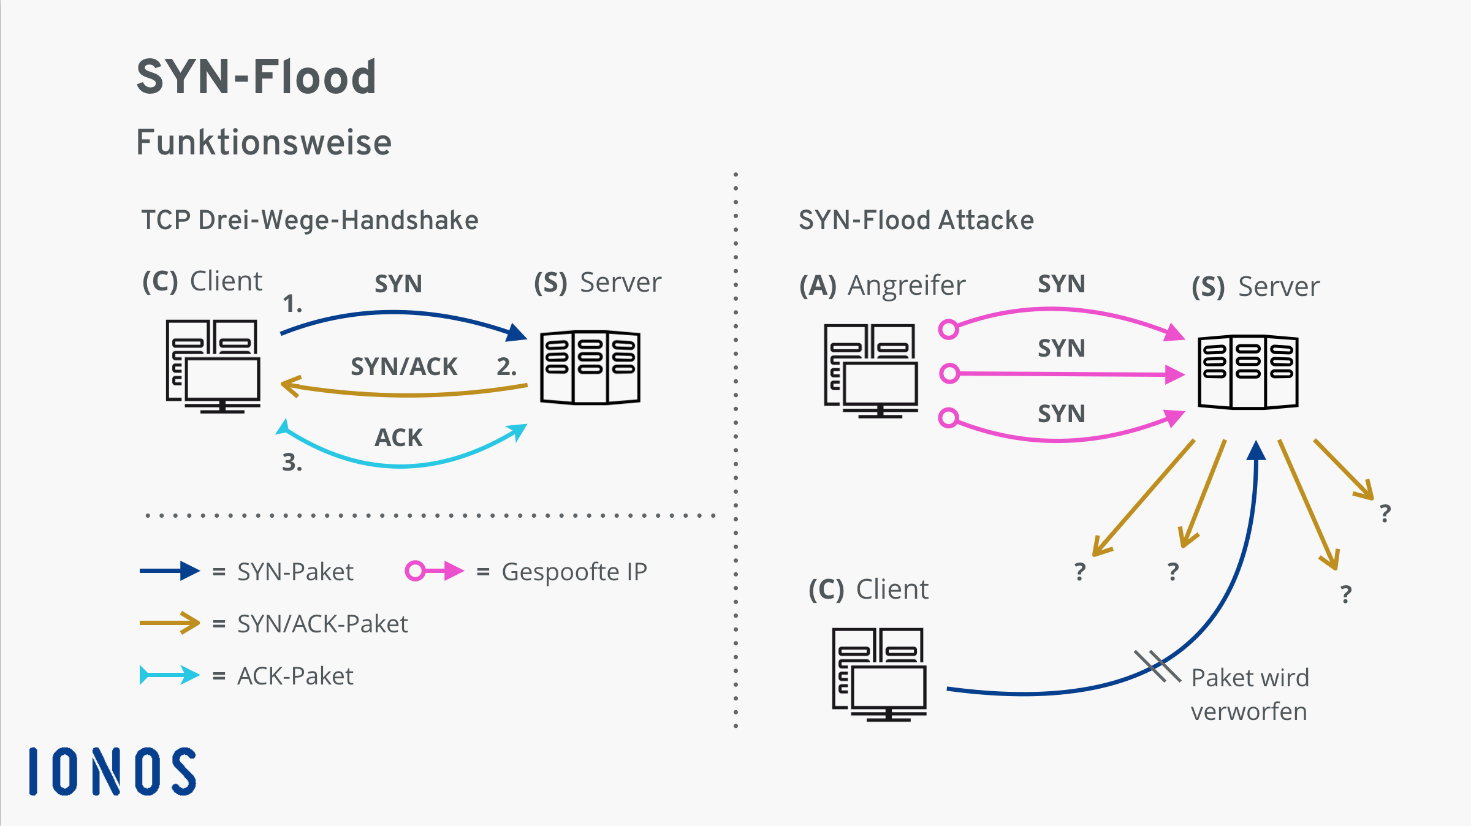 SYN-Flood: Funktionsweise – TCP Drei-Wege-Handshake und SYN-Flood Attacke